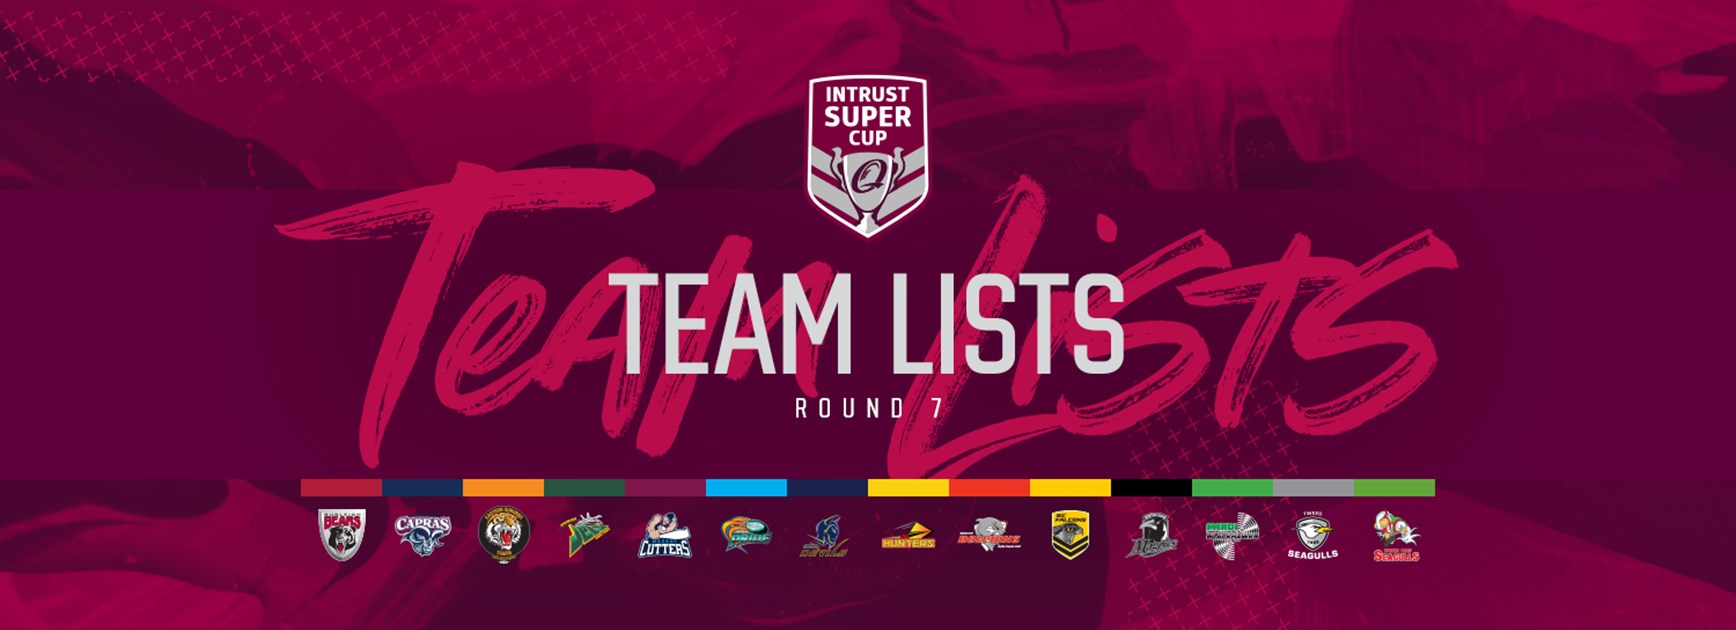 Intrust Super Cup Round 7 teams